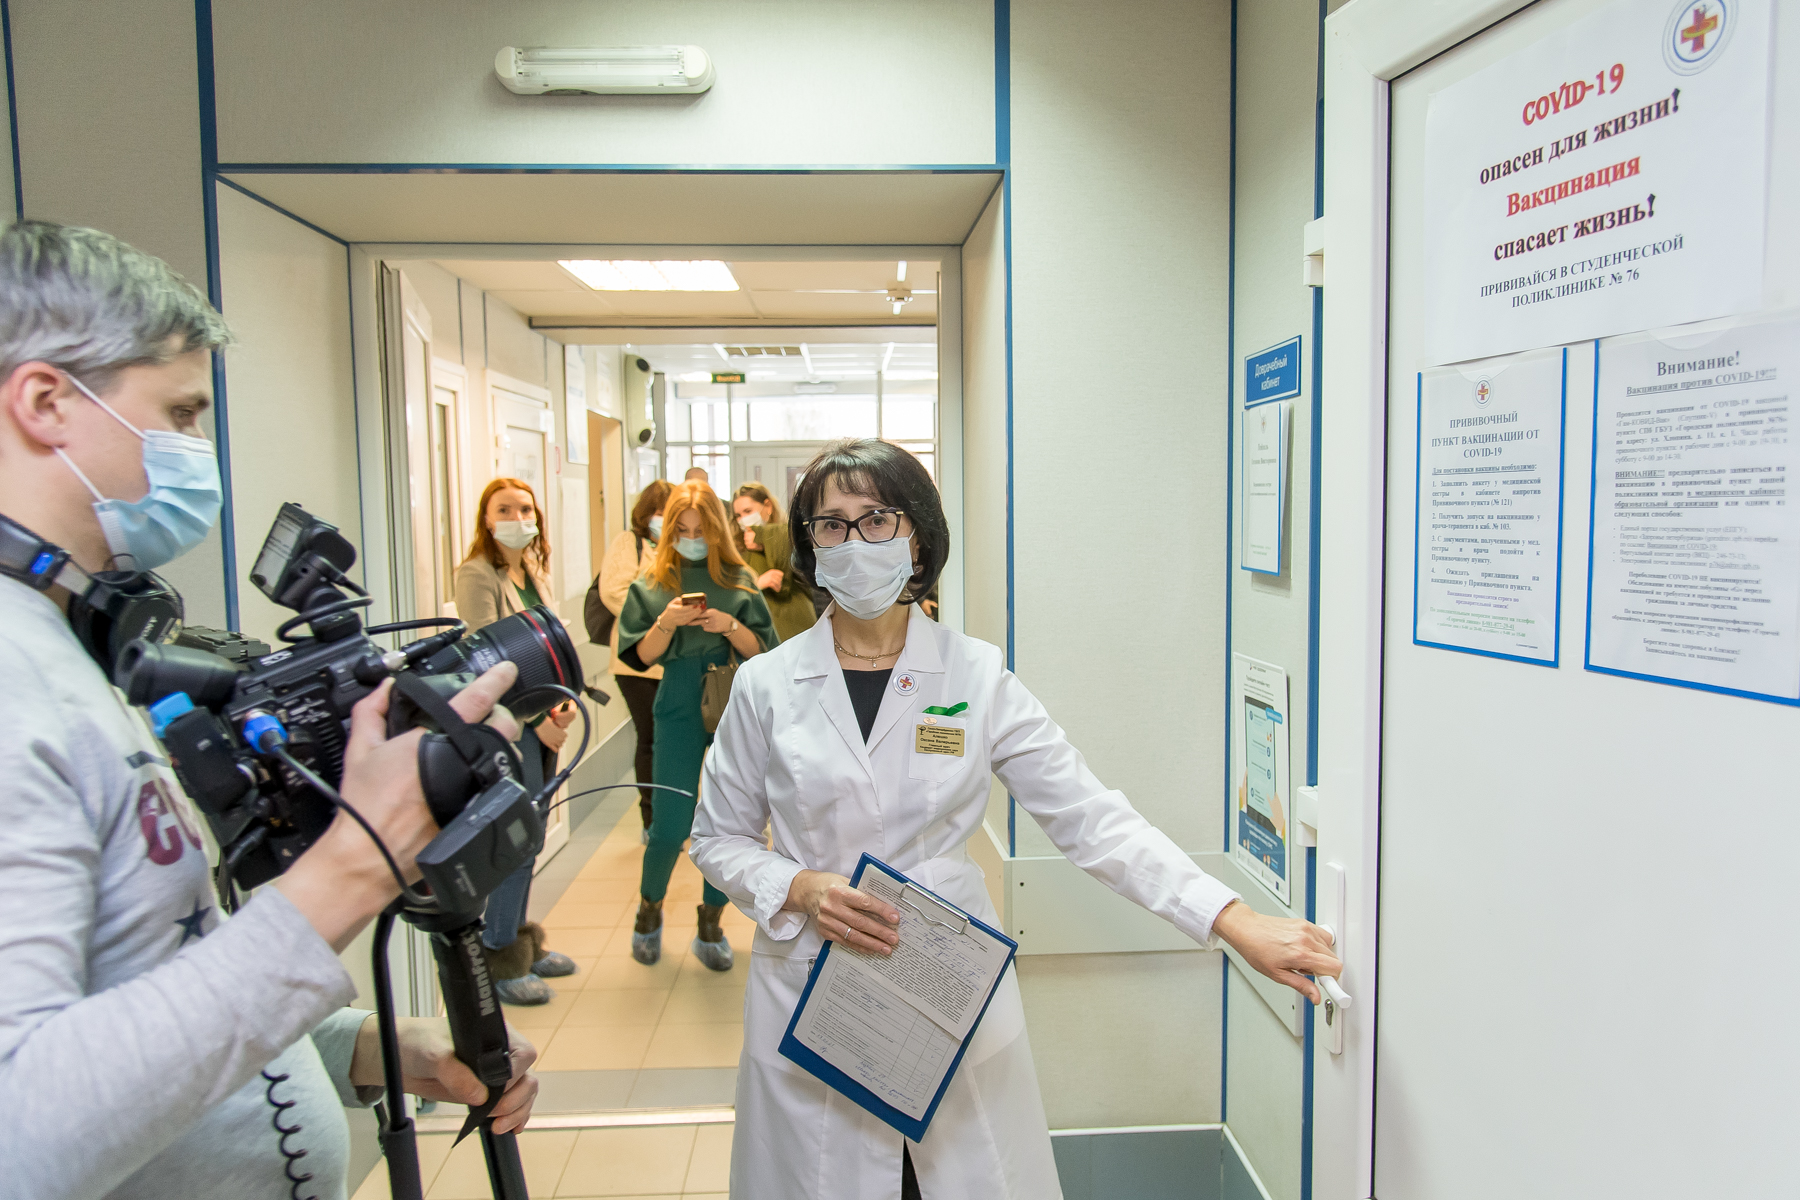 Главный врач поликлиники №76 Оксана АЛЕШКО напоминает, что надежным способом защиты от коронавируса является вакцинация